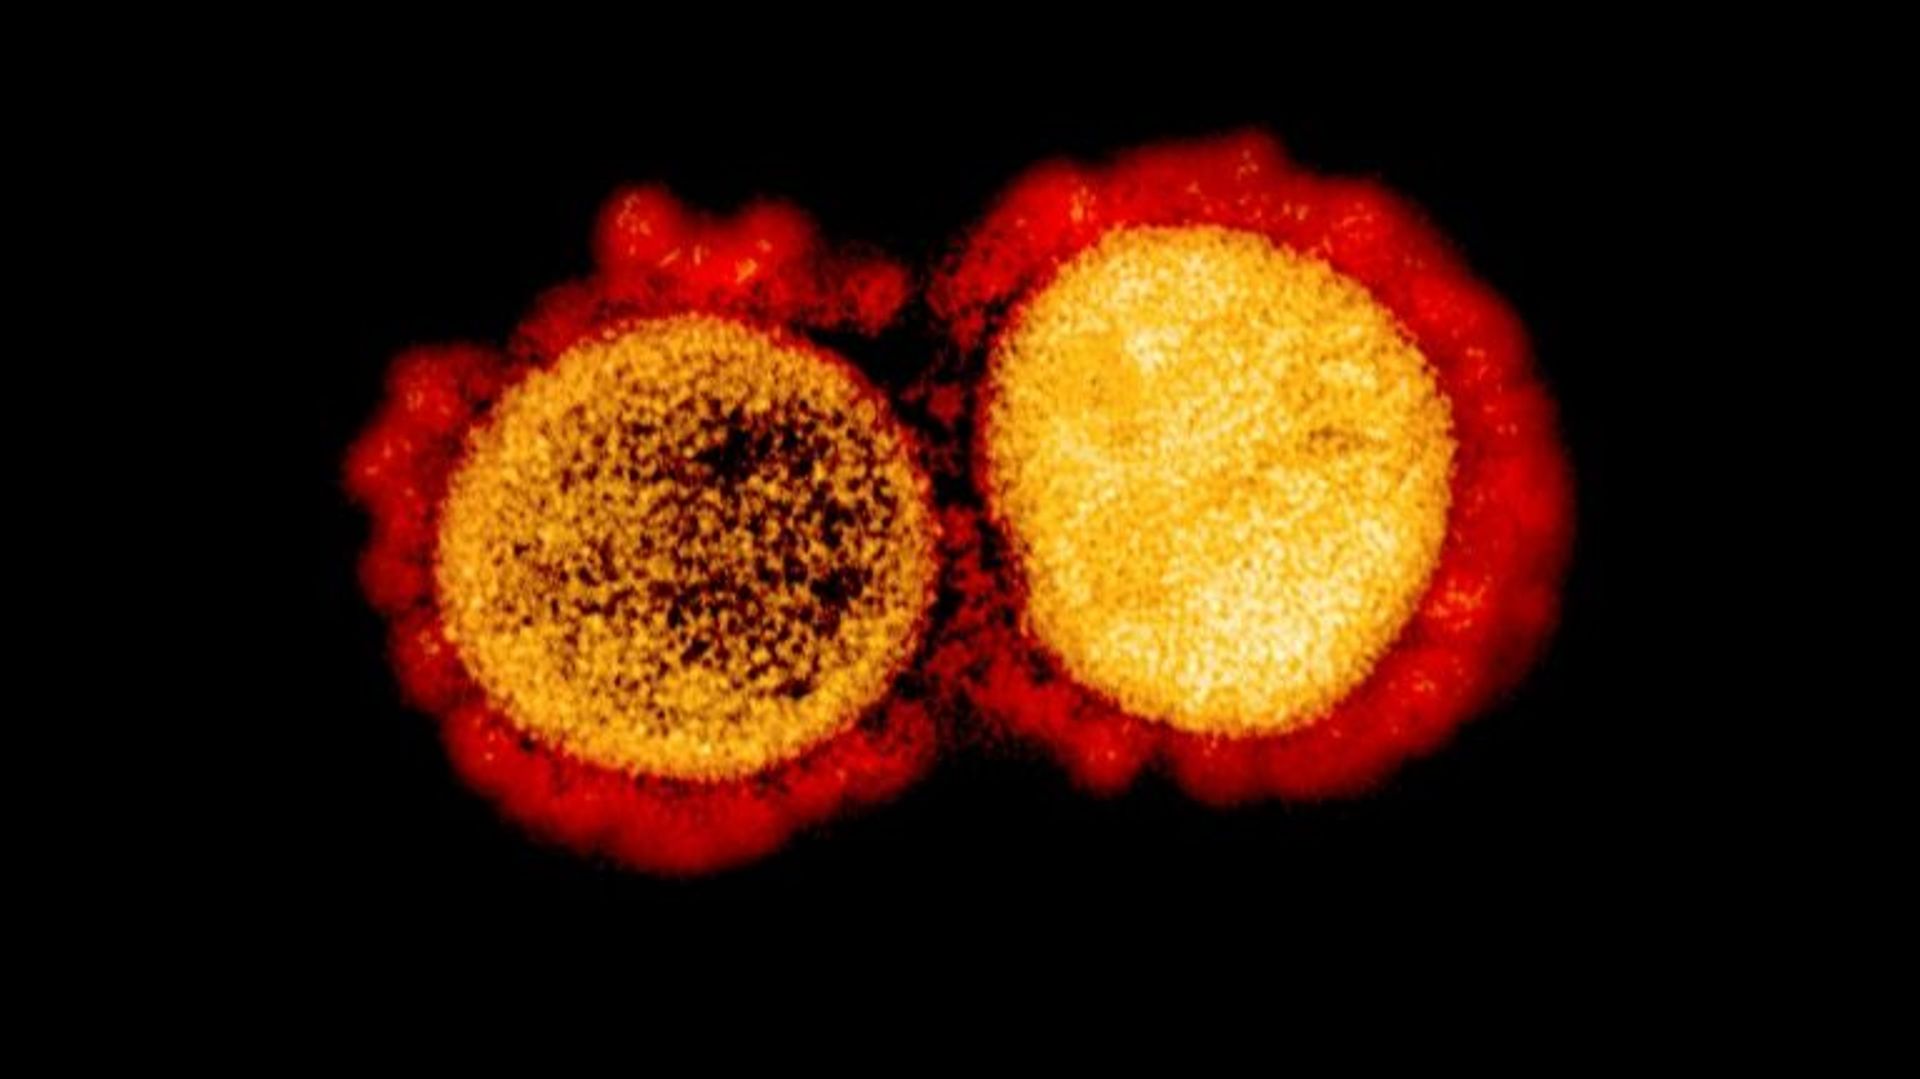 Une image du virus SARS-CoV-2 transmise par les Instituts nationaux de santé (NIH/NIAD) le 11 août 2020